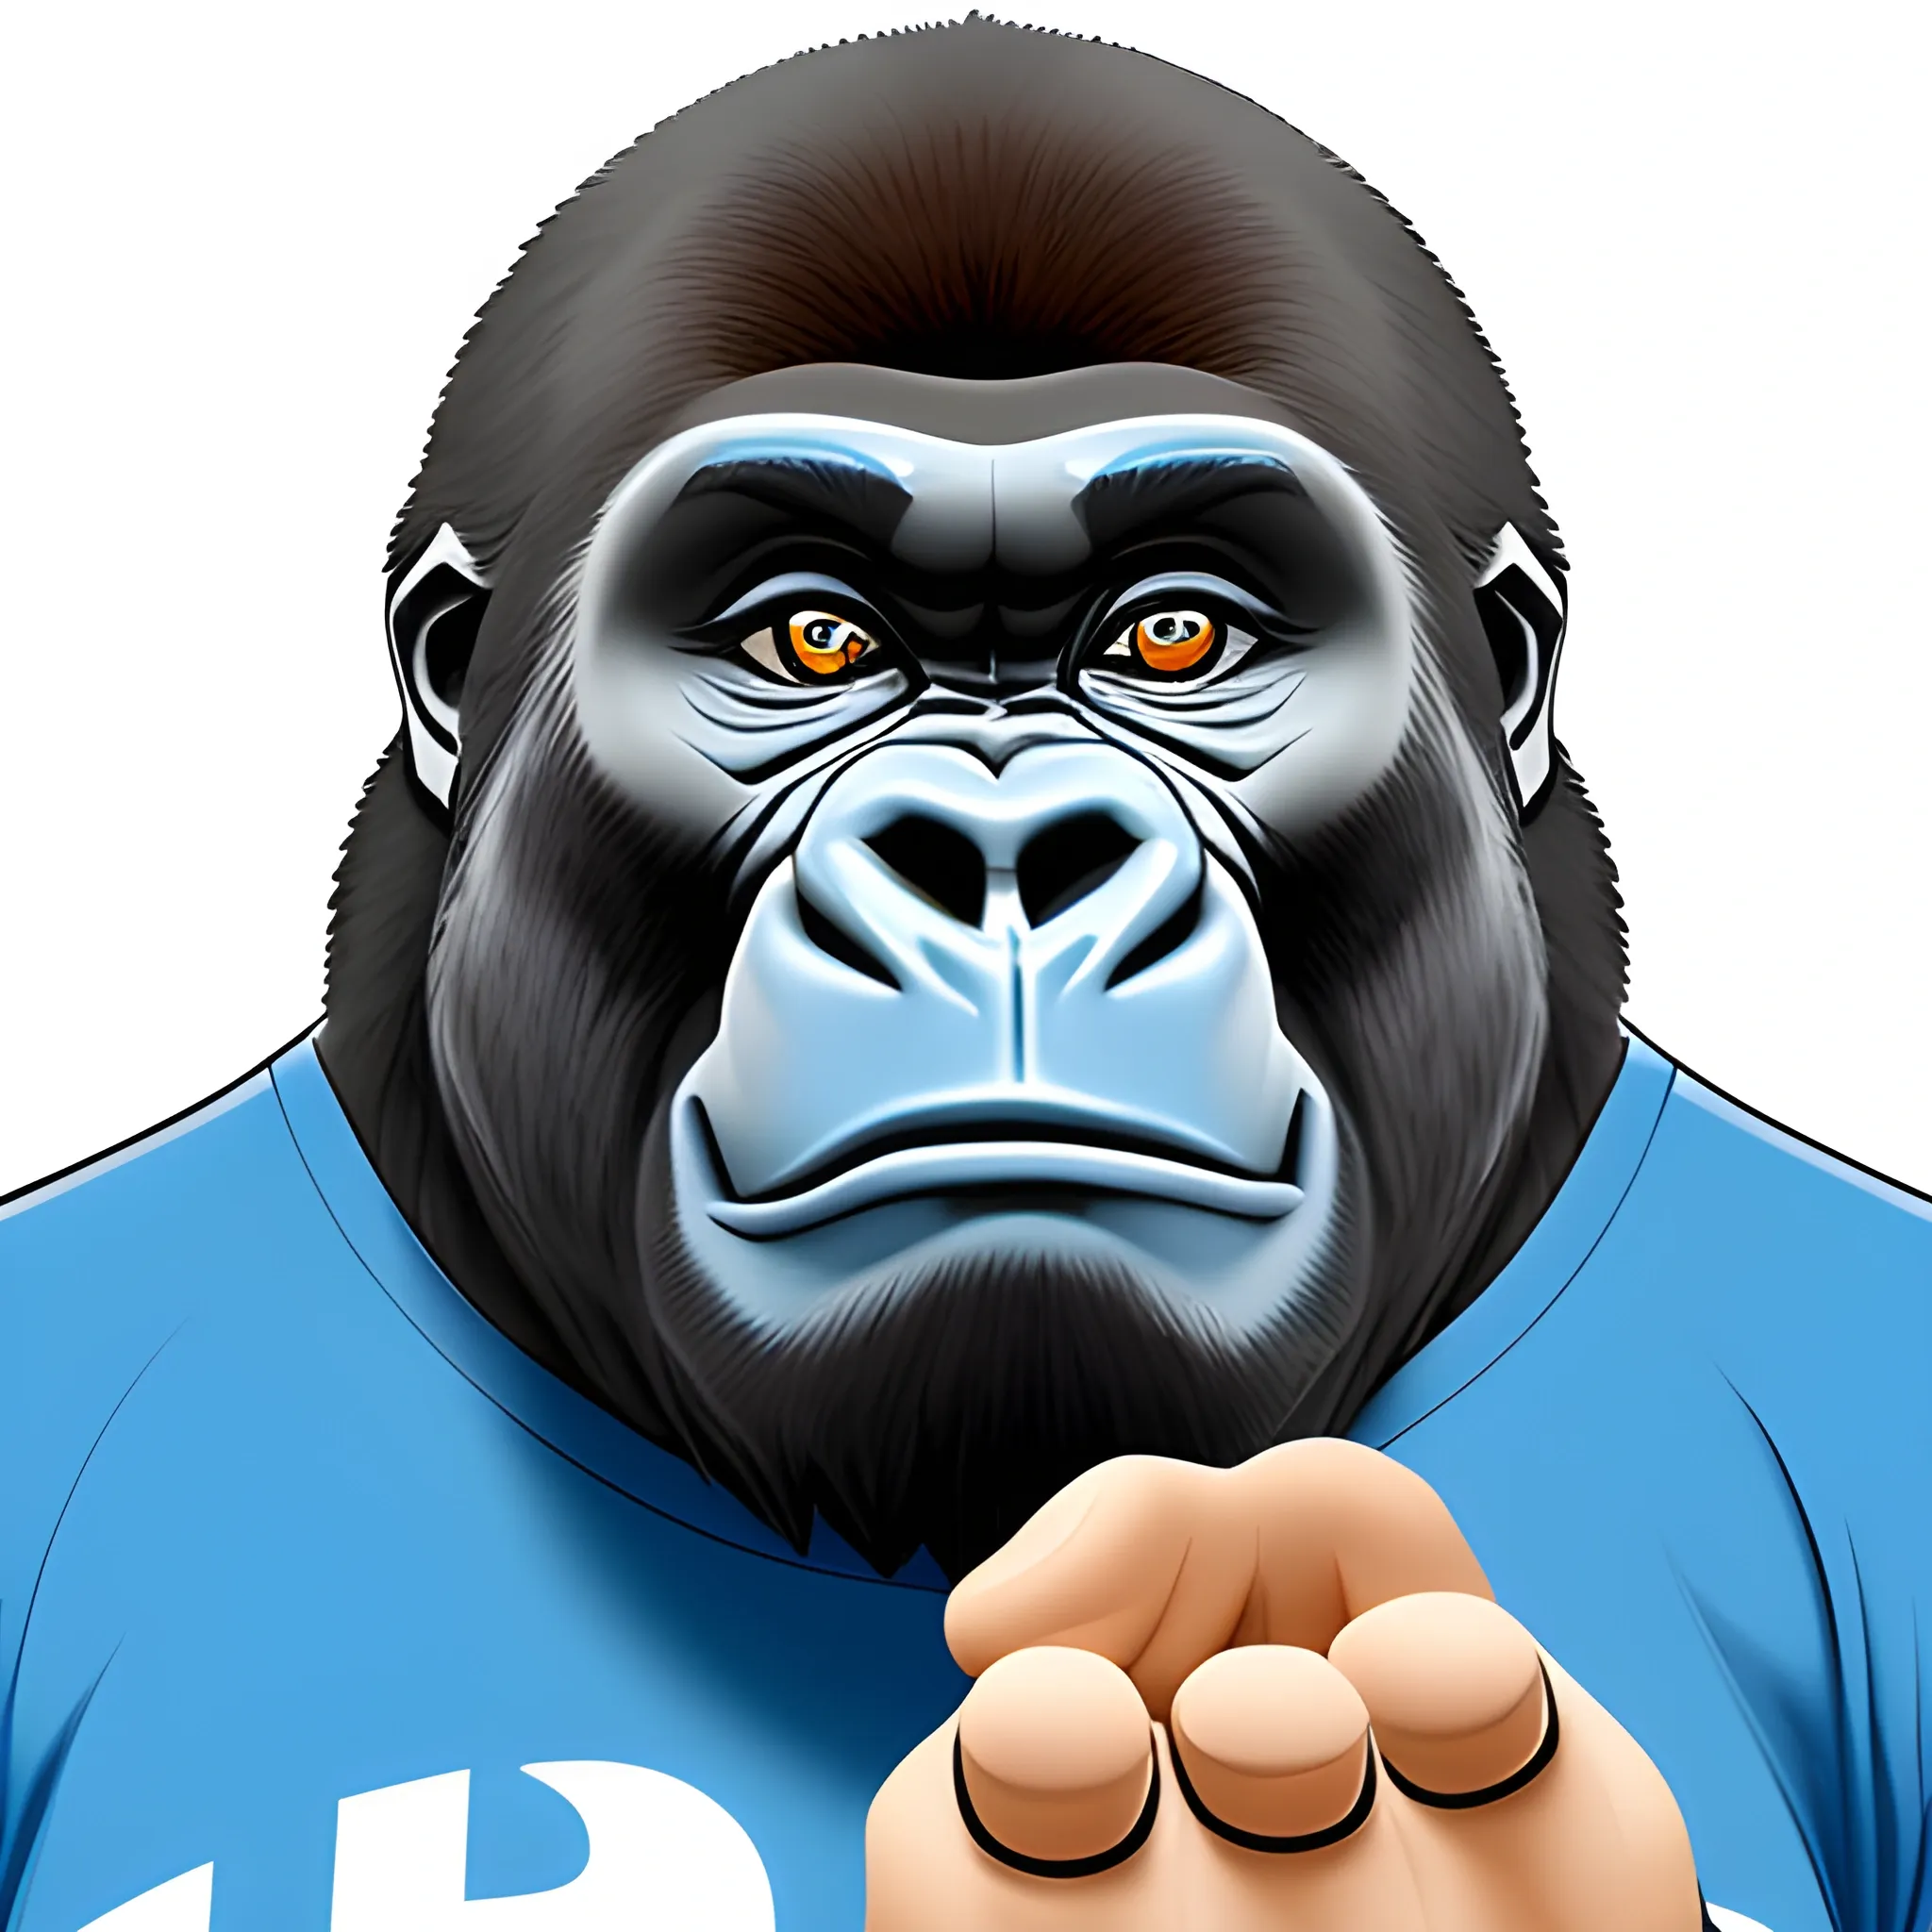 Gorilla, H3L Pro X ball in hand, blue t-shirt written "HANDLOUCURA", Cartoon, 